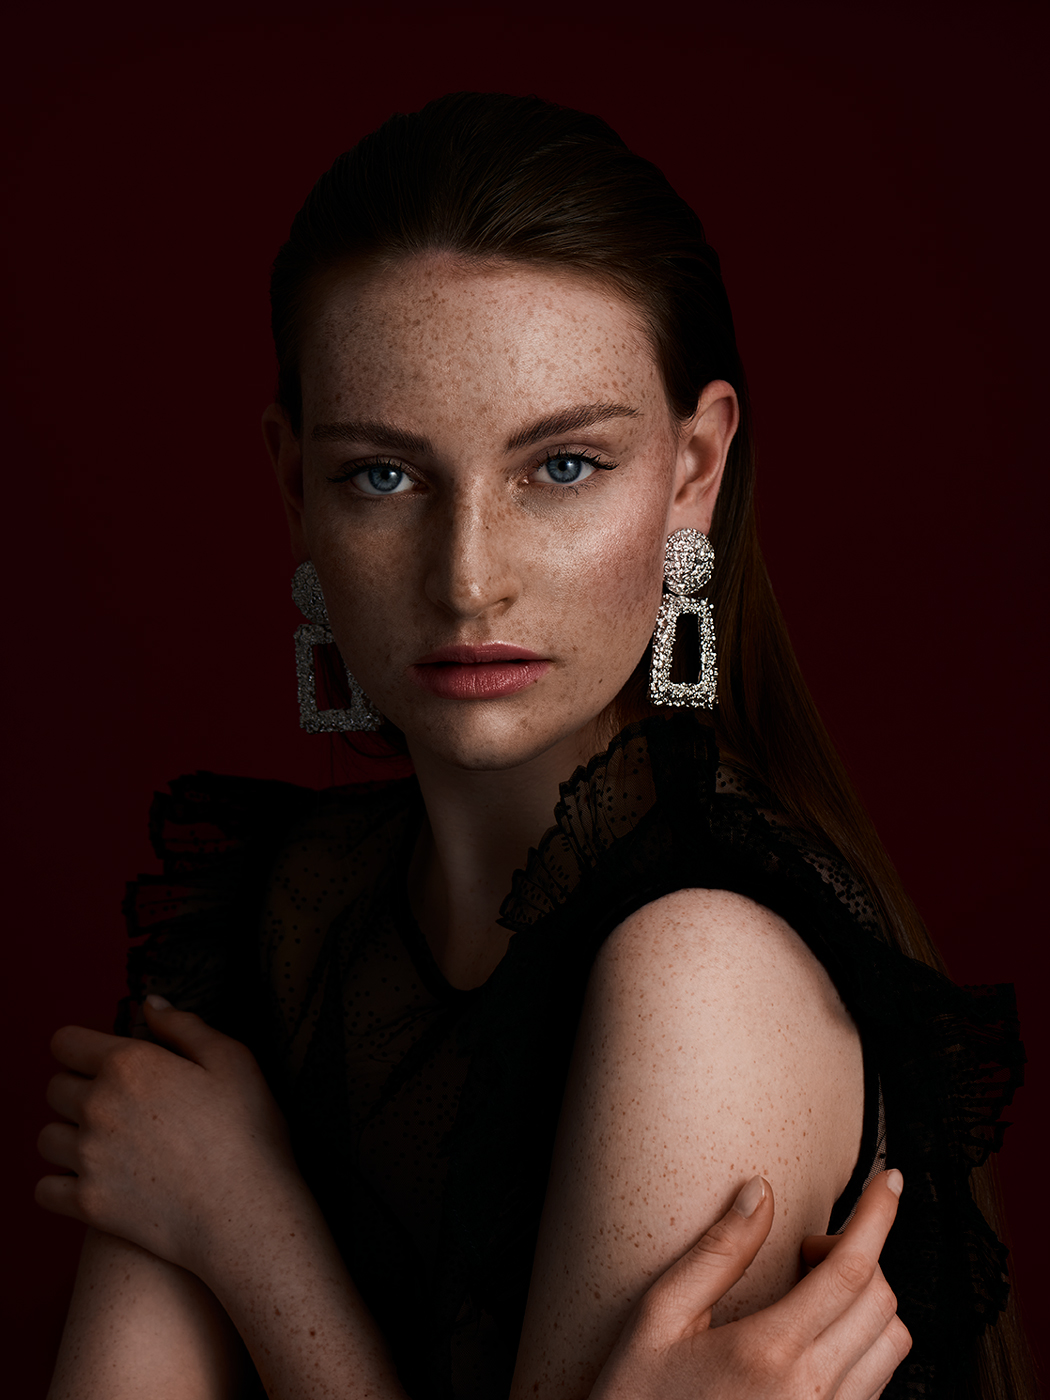 Frau vor rotem Hintergrund Portrait by Eveliene Klink